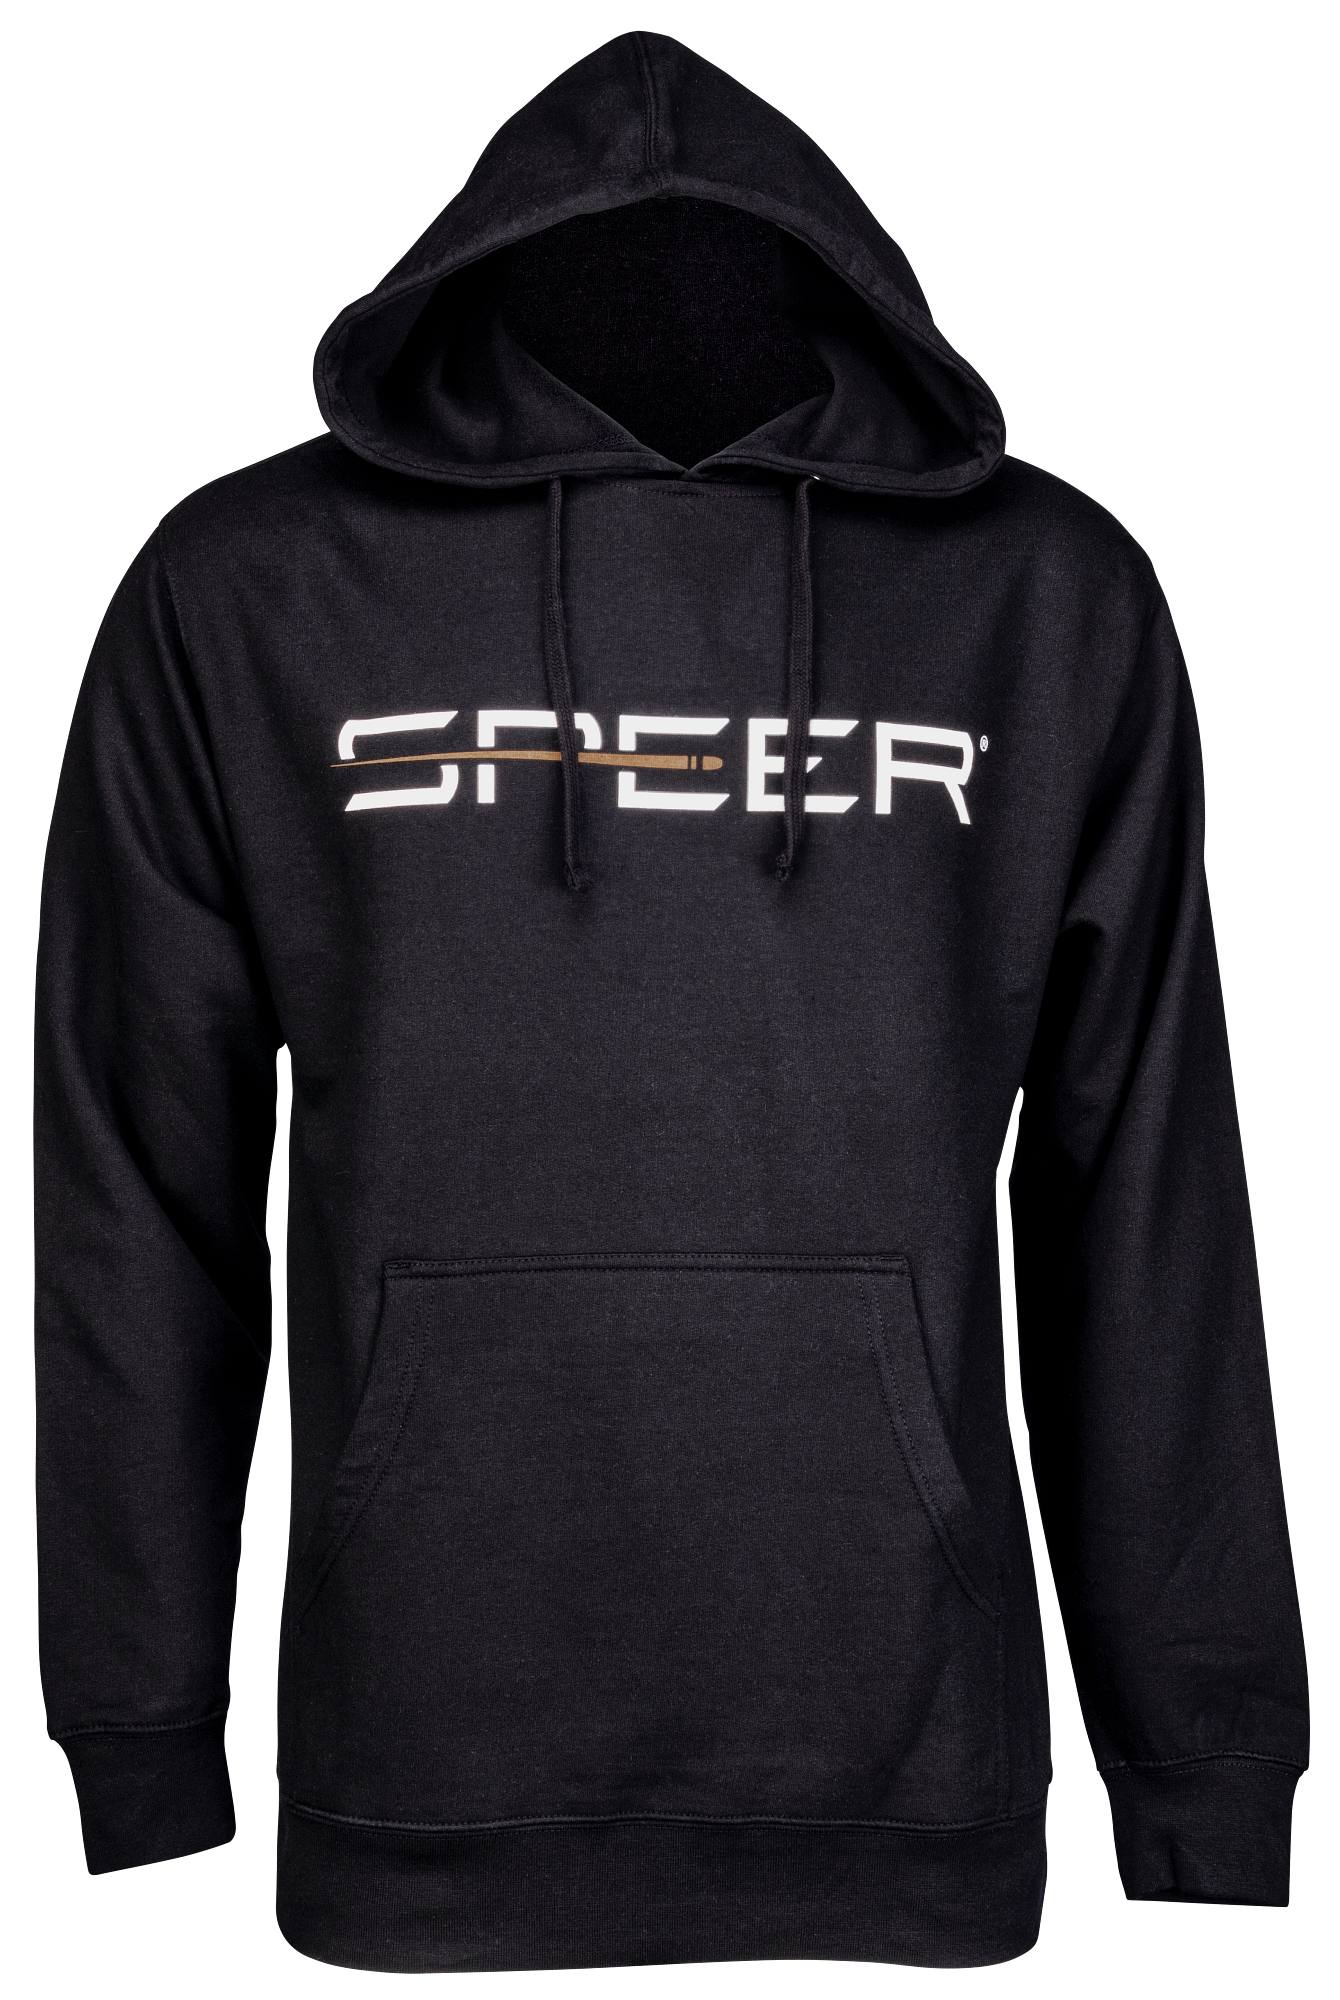 Buy Speer Classic Logo Hoodie for USD 65.99 | Speer